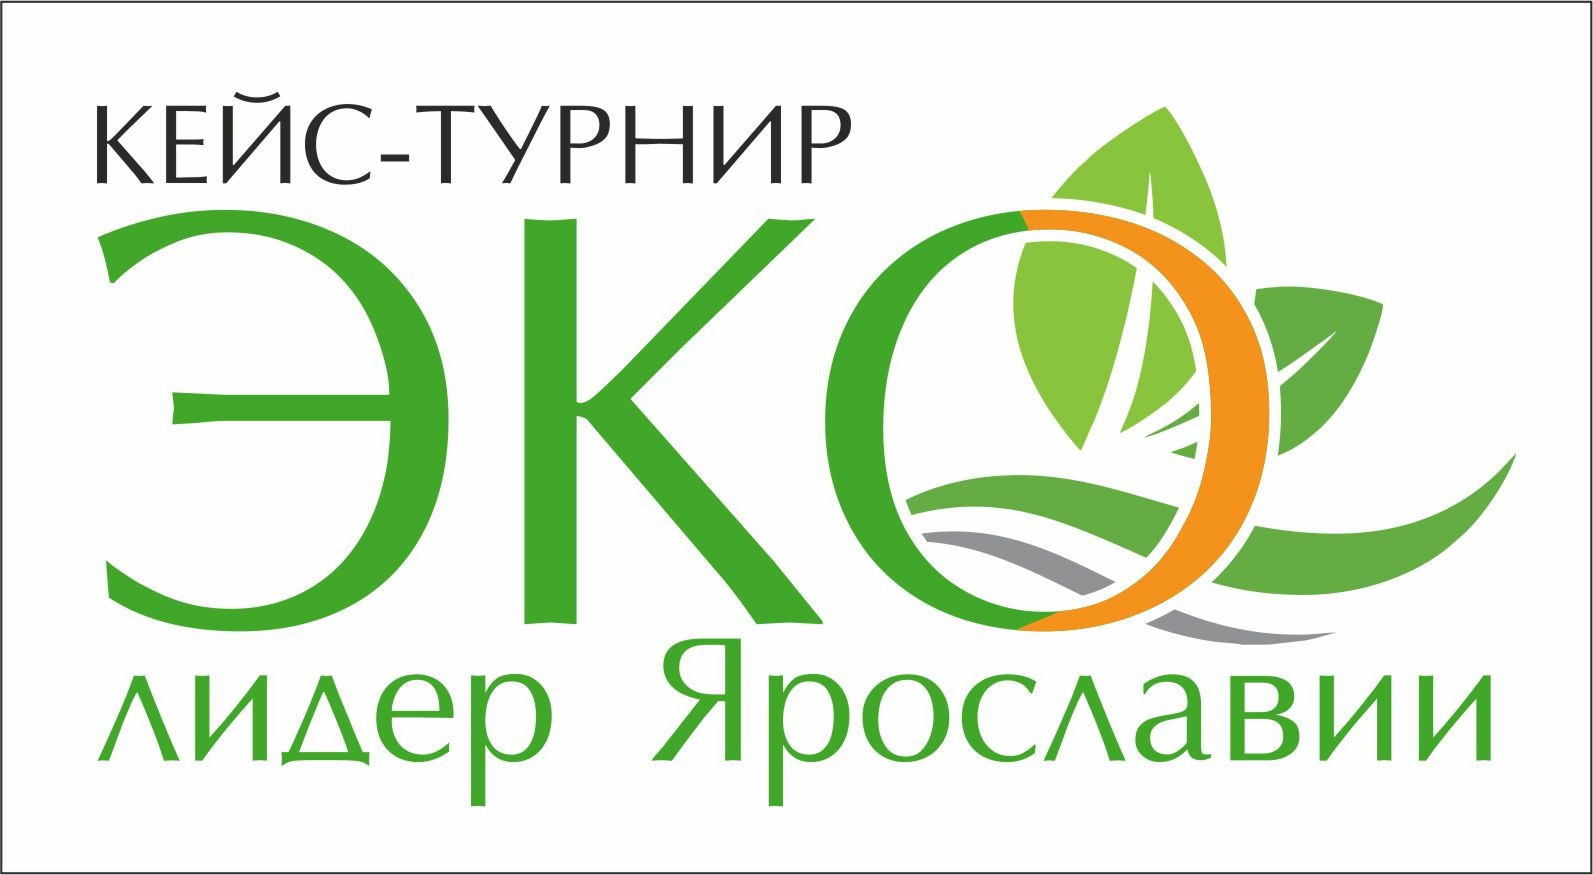 Ярославские школьники могут присоединиться к «Марафону экособытий Ярославии»